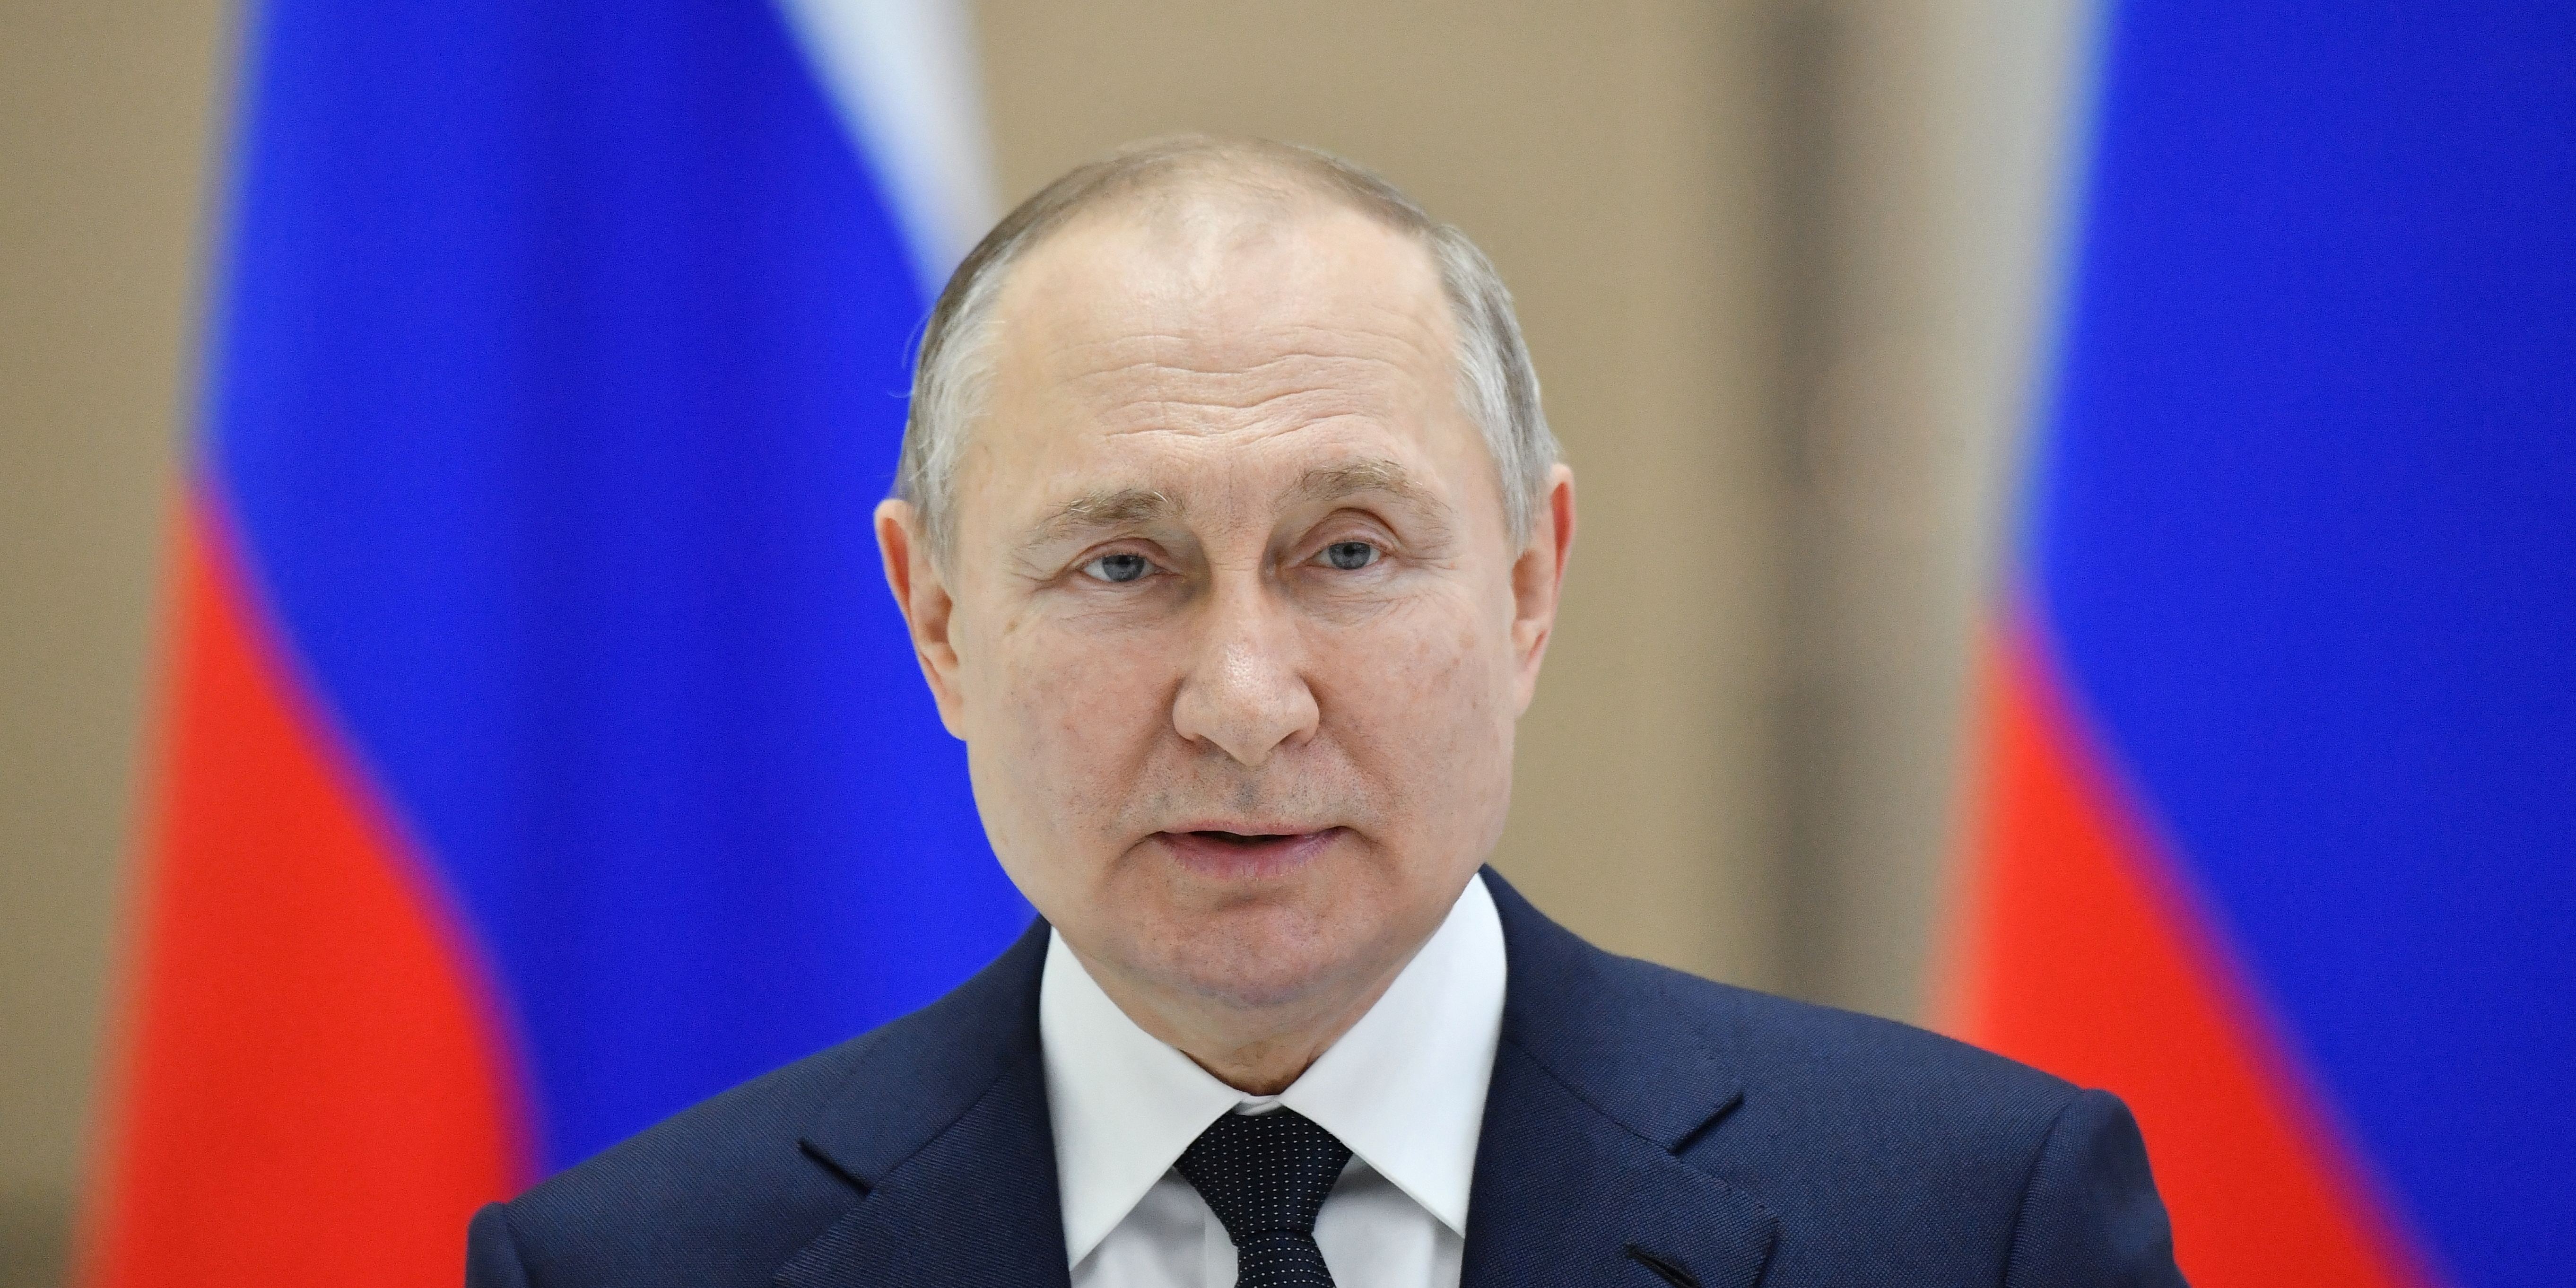 Pétrole, gaz, charbon : Poutine anticipe la chute des achats européens et veut réorienter les exportations russes vers l'Asie